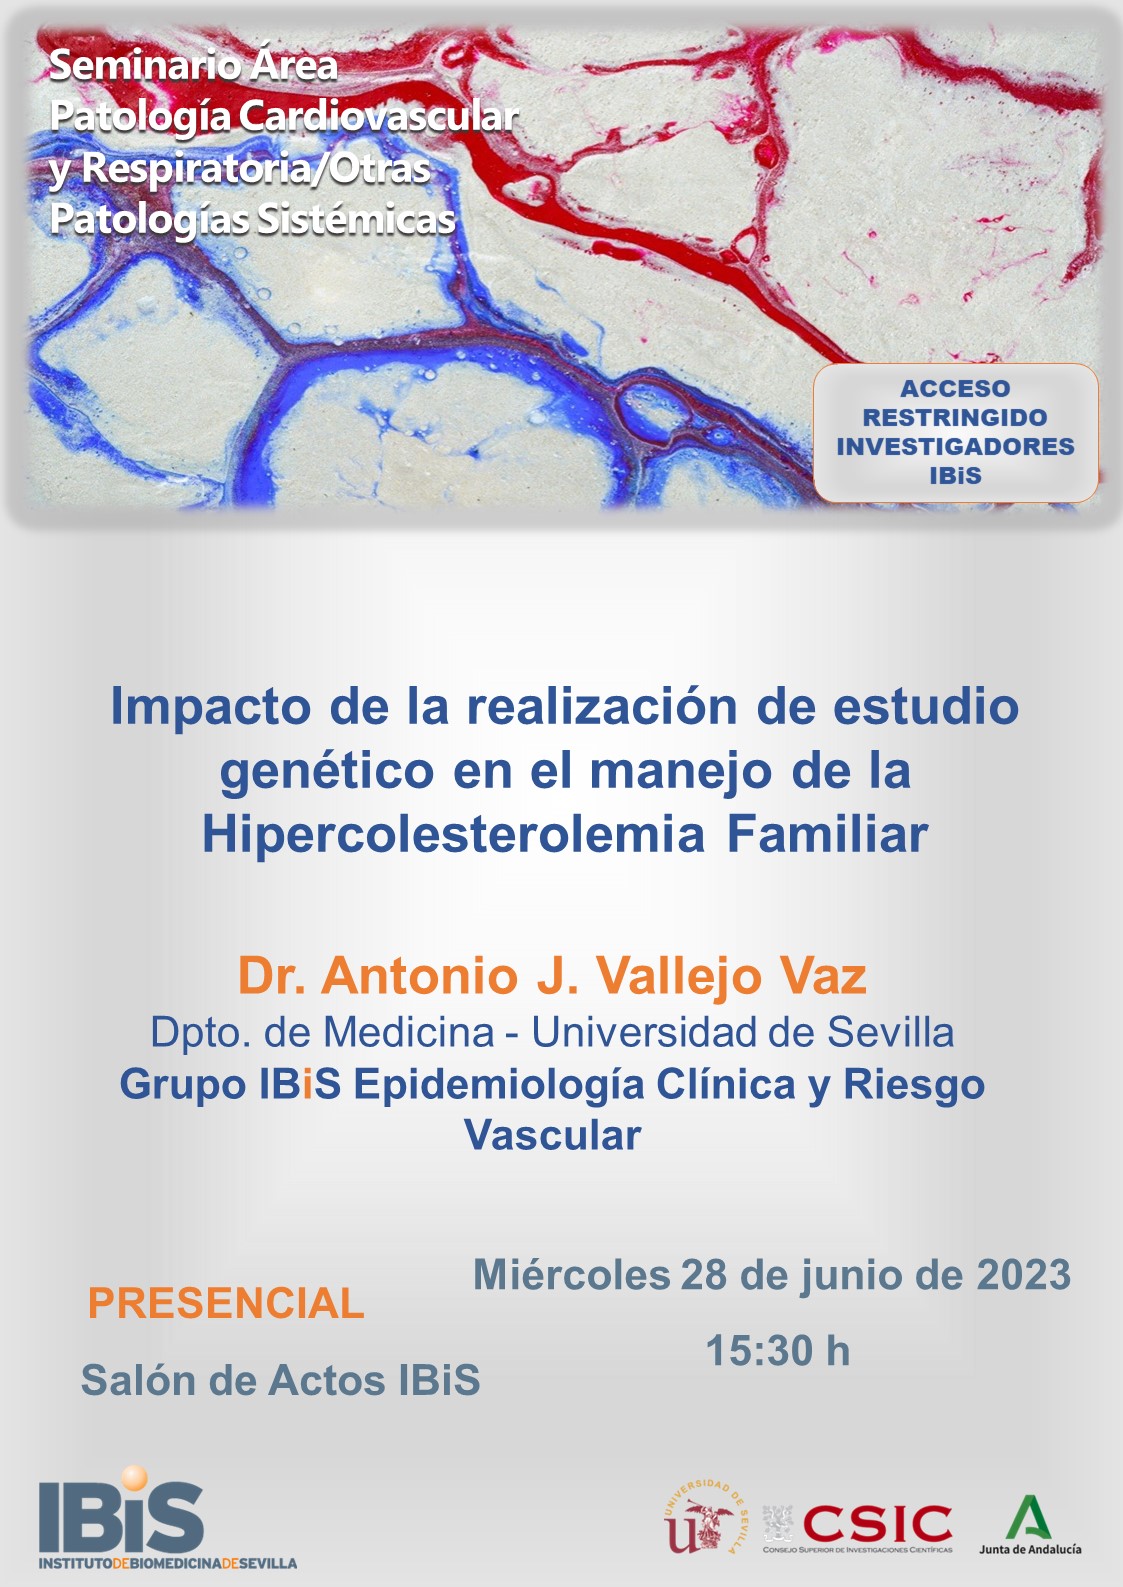 Poster: Impacto de la realización de estudio genético en el manejo de la Hipercolesterolemia Familiar